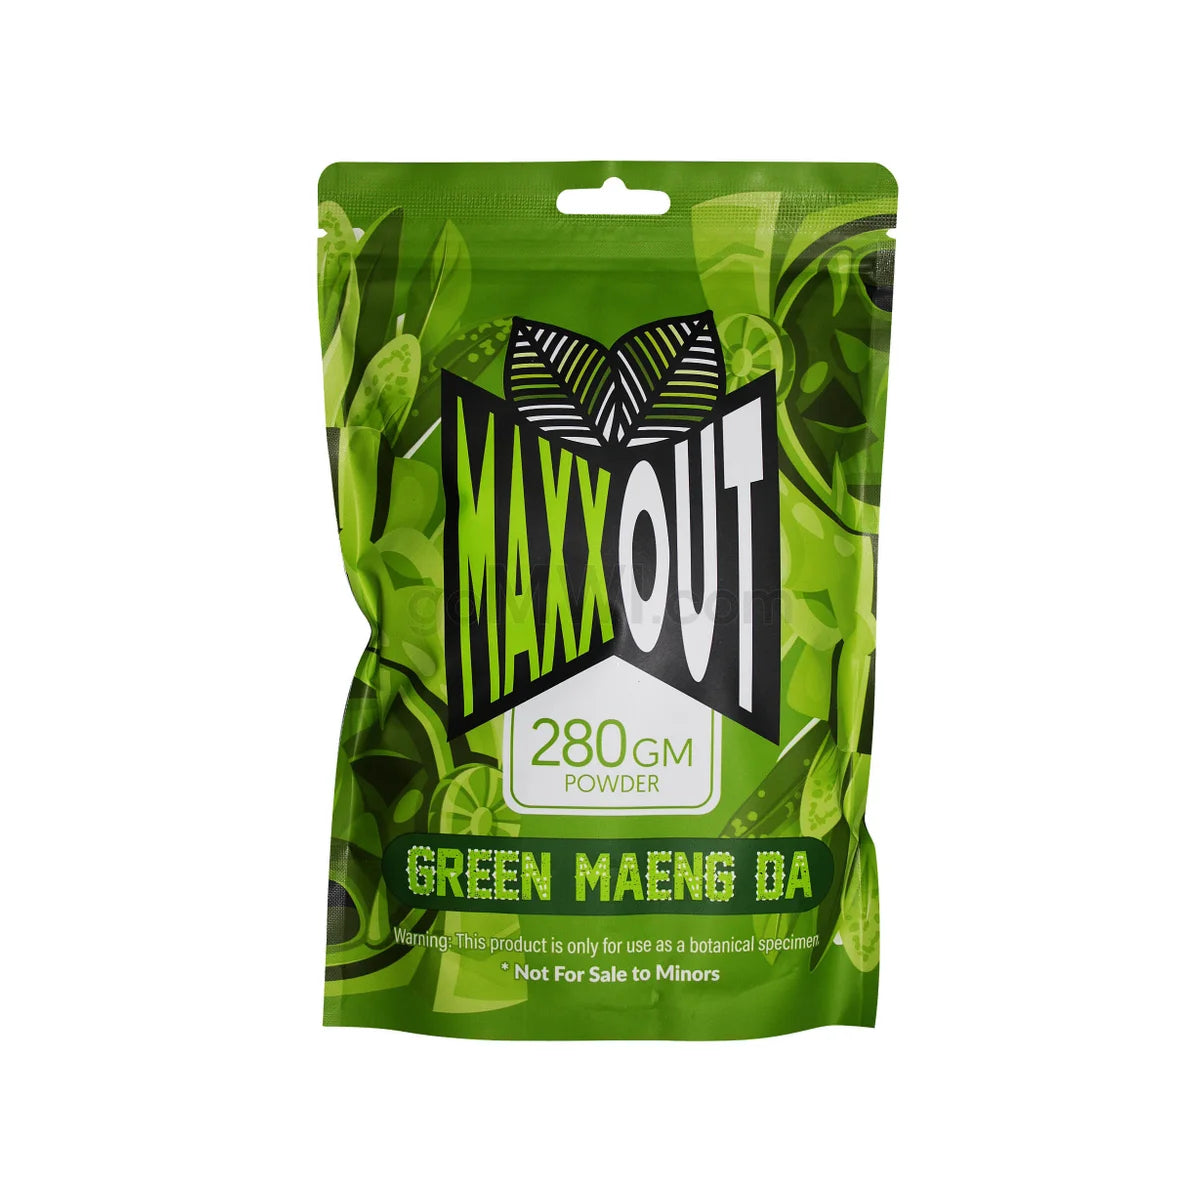 Maxx Out Kratom Green Maeng Da 280g Powder